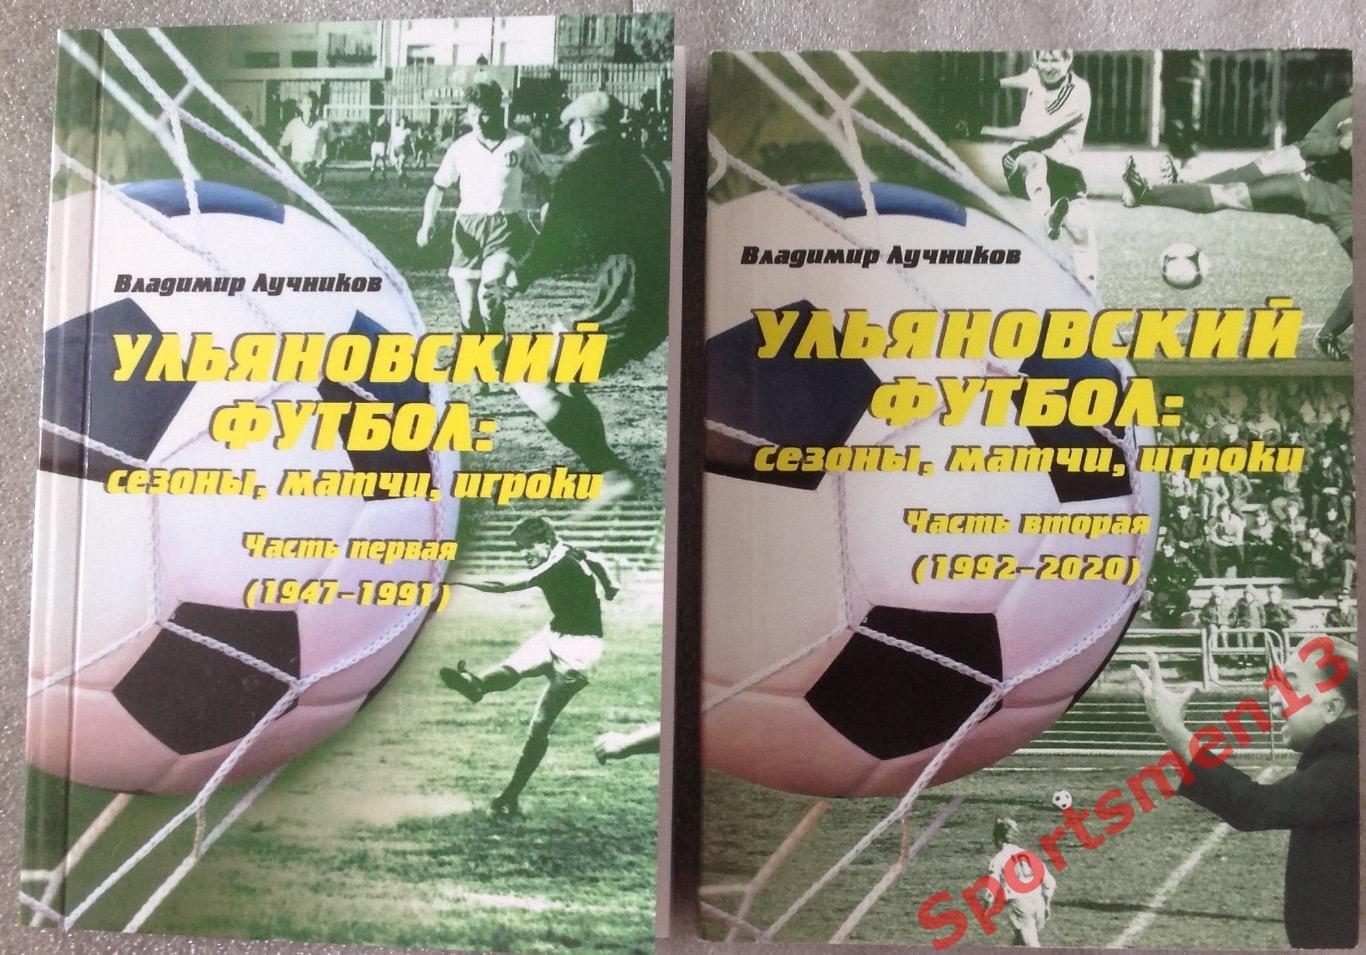 Ульяновский футбол: сезоны, матчи, игроки. В 2-х томах. 1947-2020.